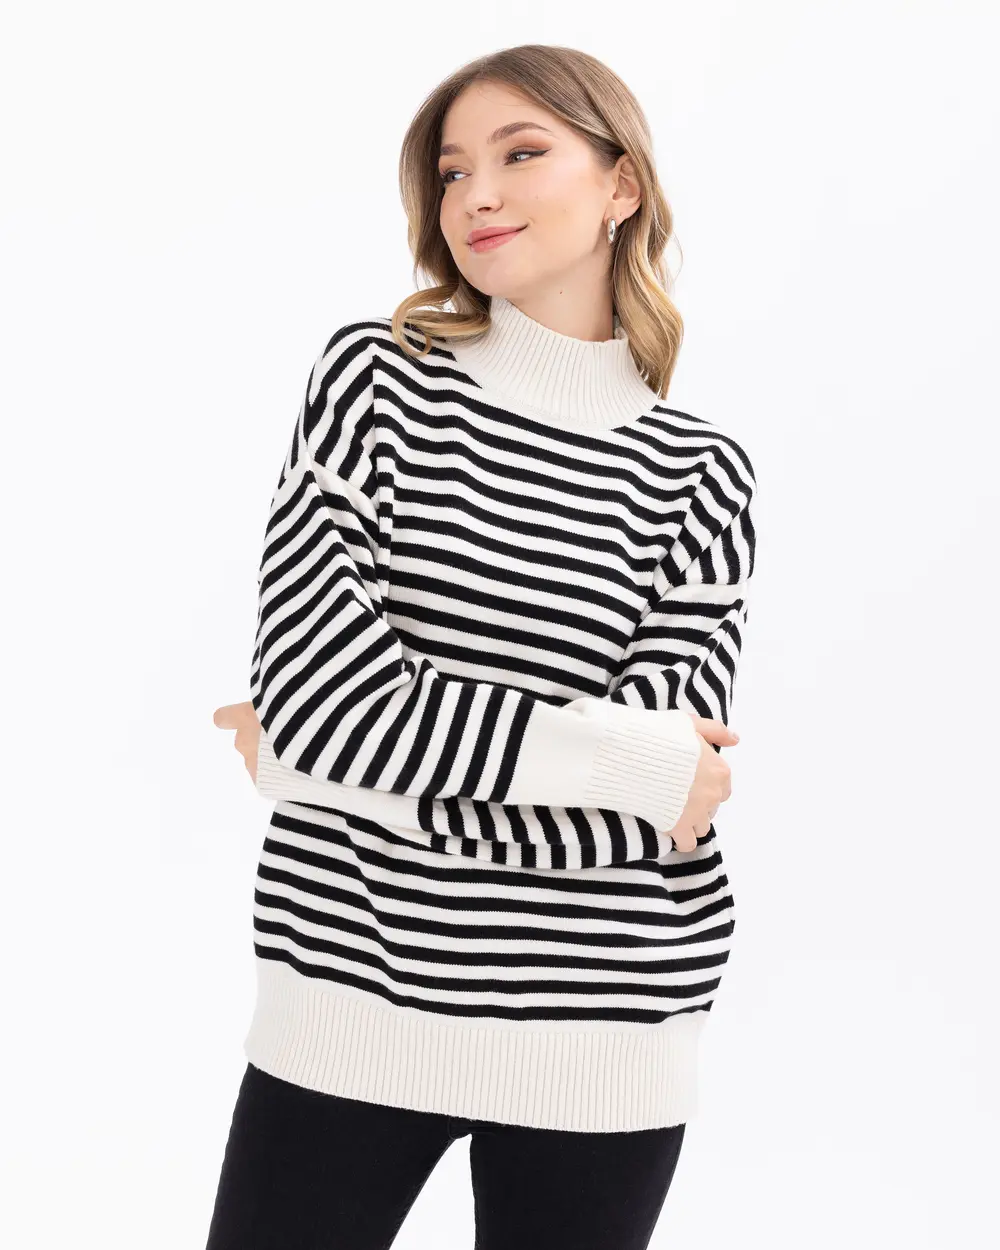 Stripe Patterned High Collar Knitwear Sweater